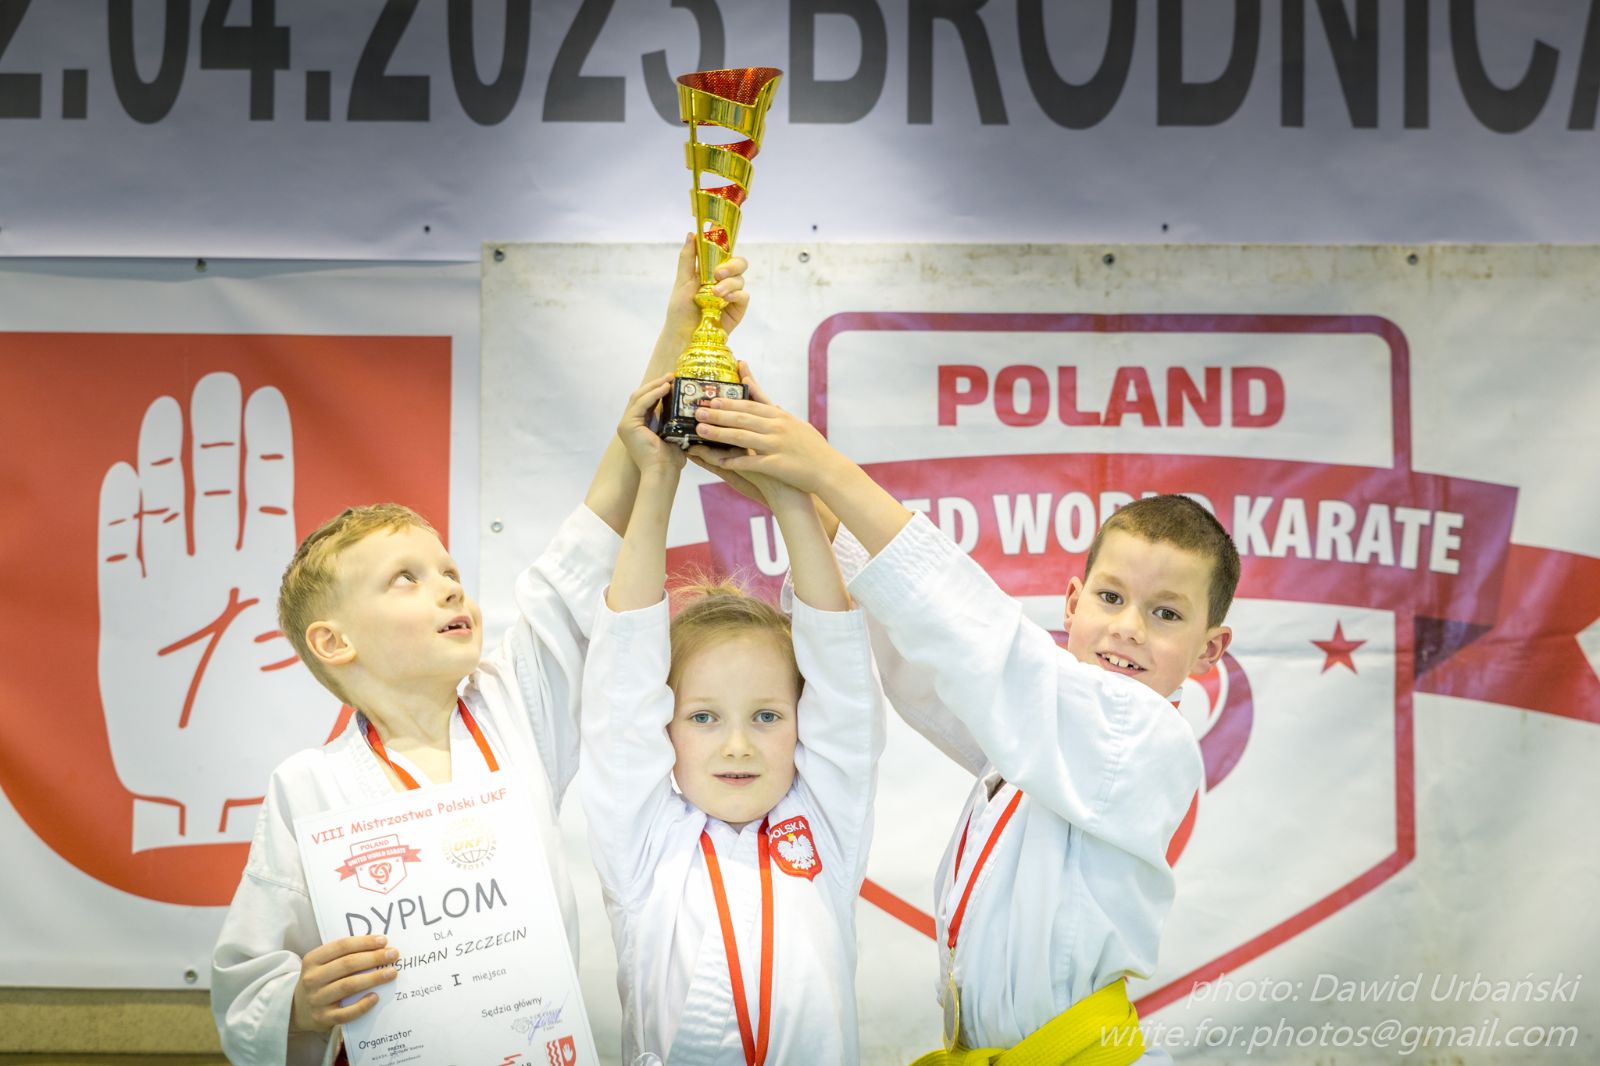 Mistrzowie Polski w kata drużynowym chłopców 11 lat i młodsi (od lewej T. Sibera, M. Szarek, J. Gajewski.jpg